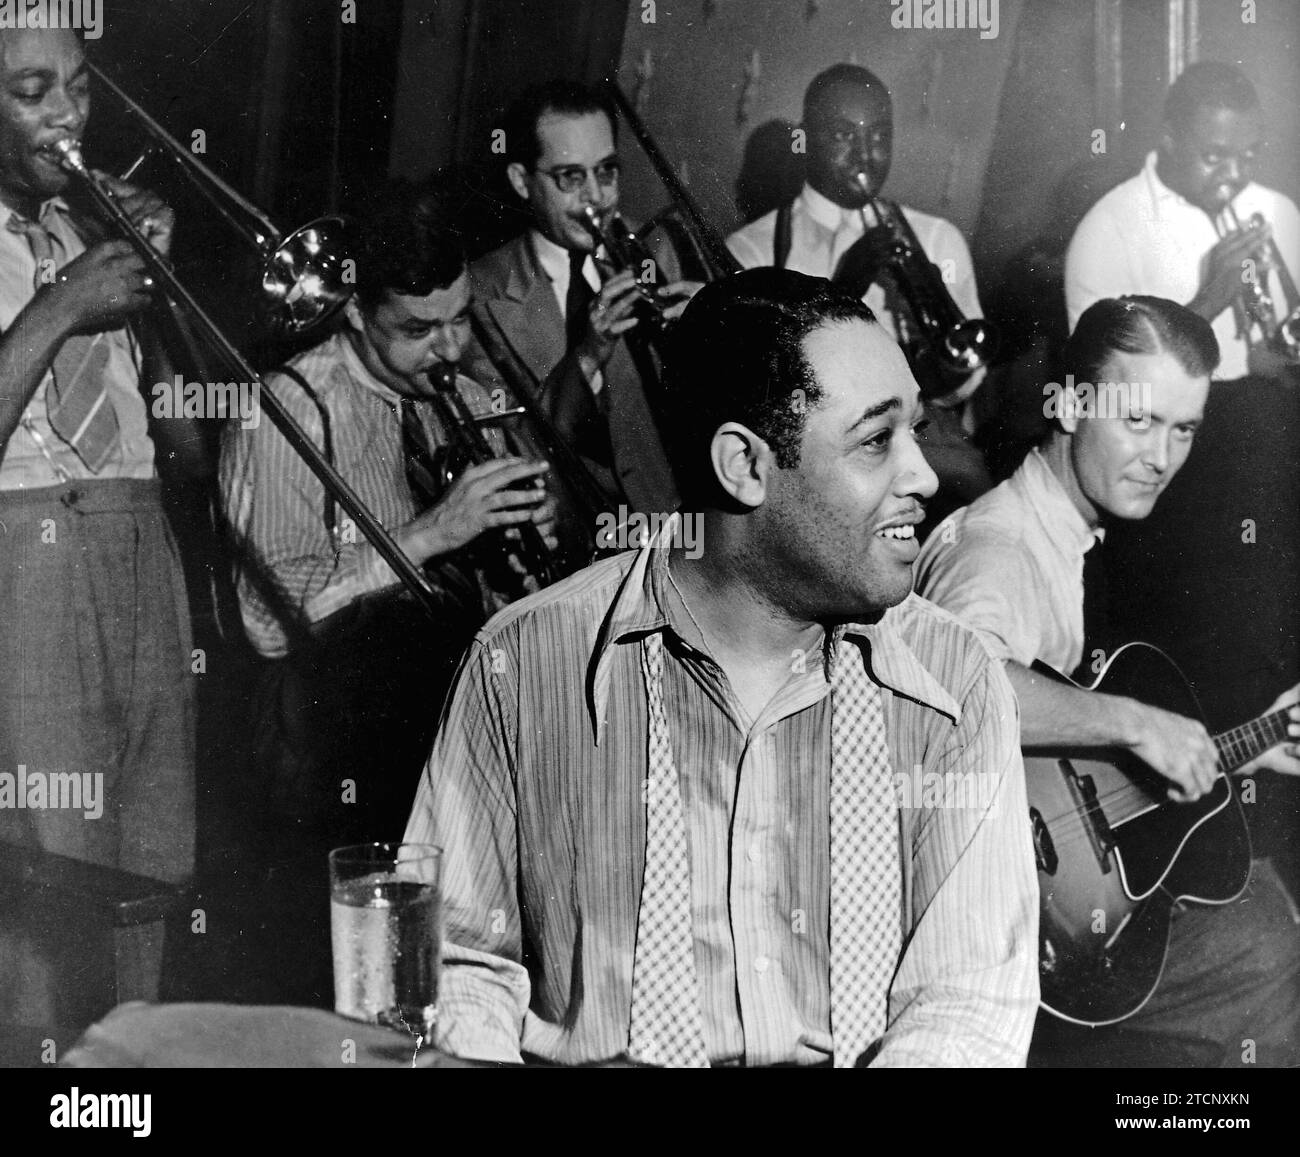 Duke Ellington, geboren in Washington, ist die Darstellung des New Orleans oder Harlem Jazz Stil. Dieses Foto aus dem Jahr 1930 zeigt den Gitarristen Eddie Condon auf der rechten Seite. Ellington wurde nicht so sehr als Jazzpianist berühmt, sondern wegen seiner Leichtigkeit beim Komponieren und seiner Bereitschaft, das Orchester zu dirigieren. Quelle: Album/Archivo ABC Stockfoto